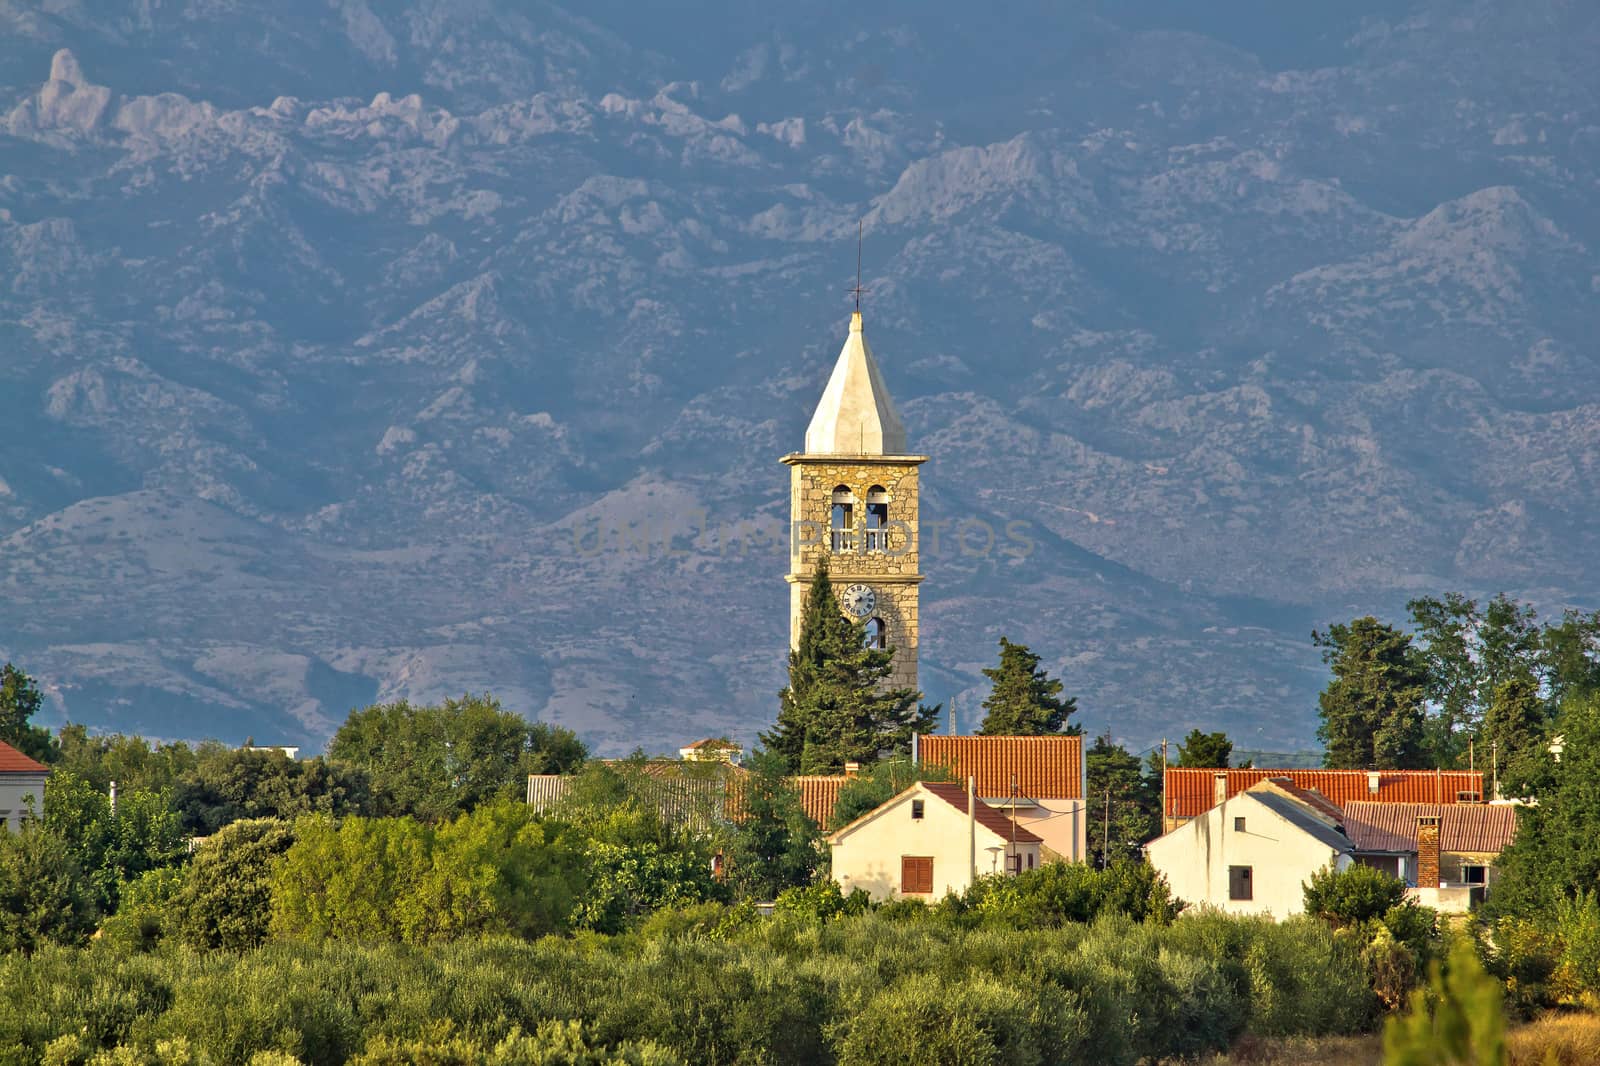 Dalmatian village of Zaton and Velebit by xbrchx